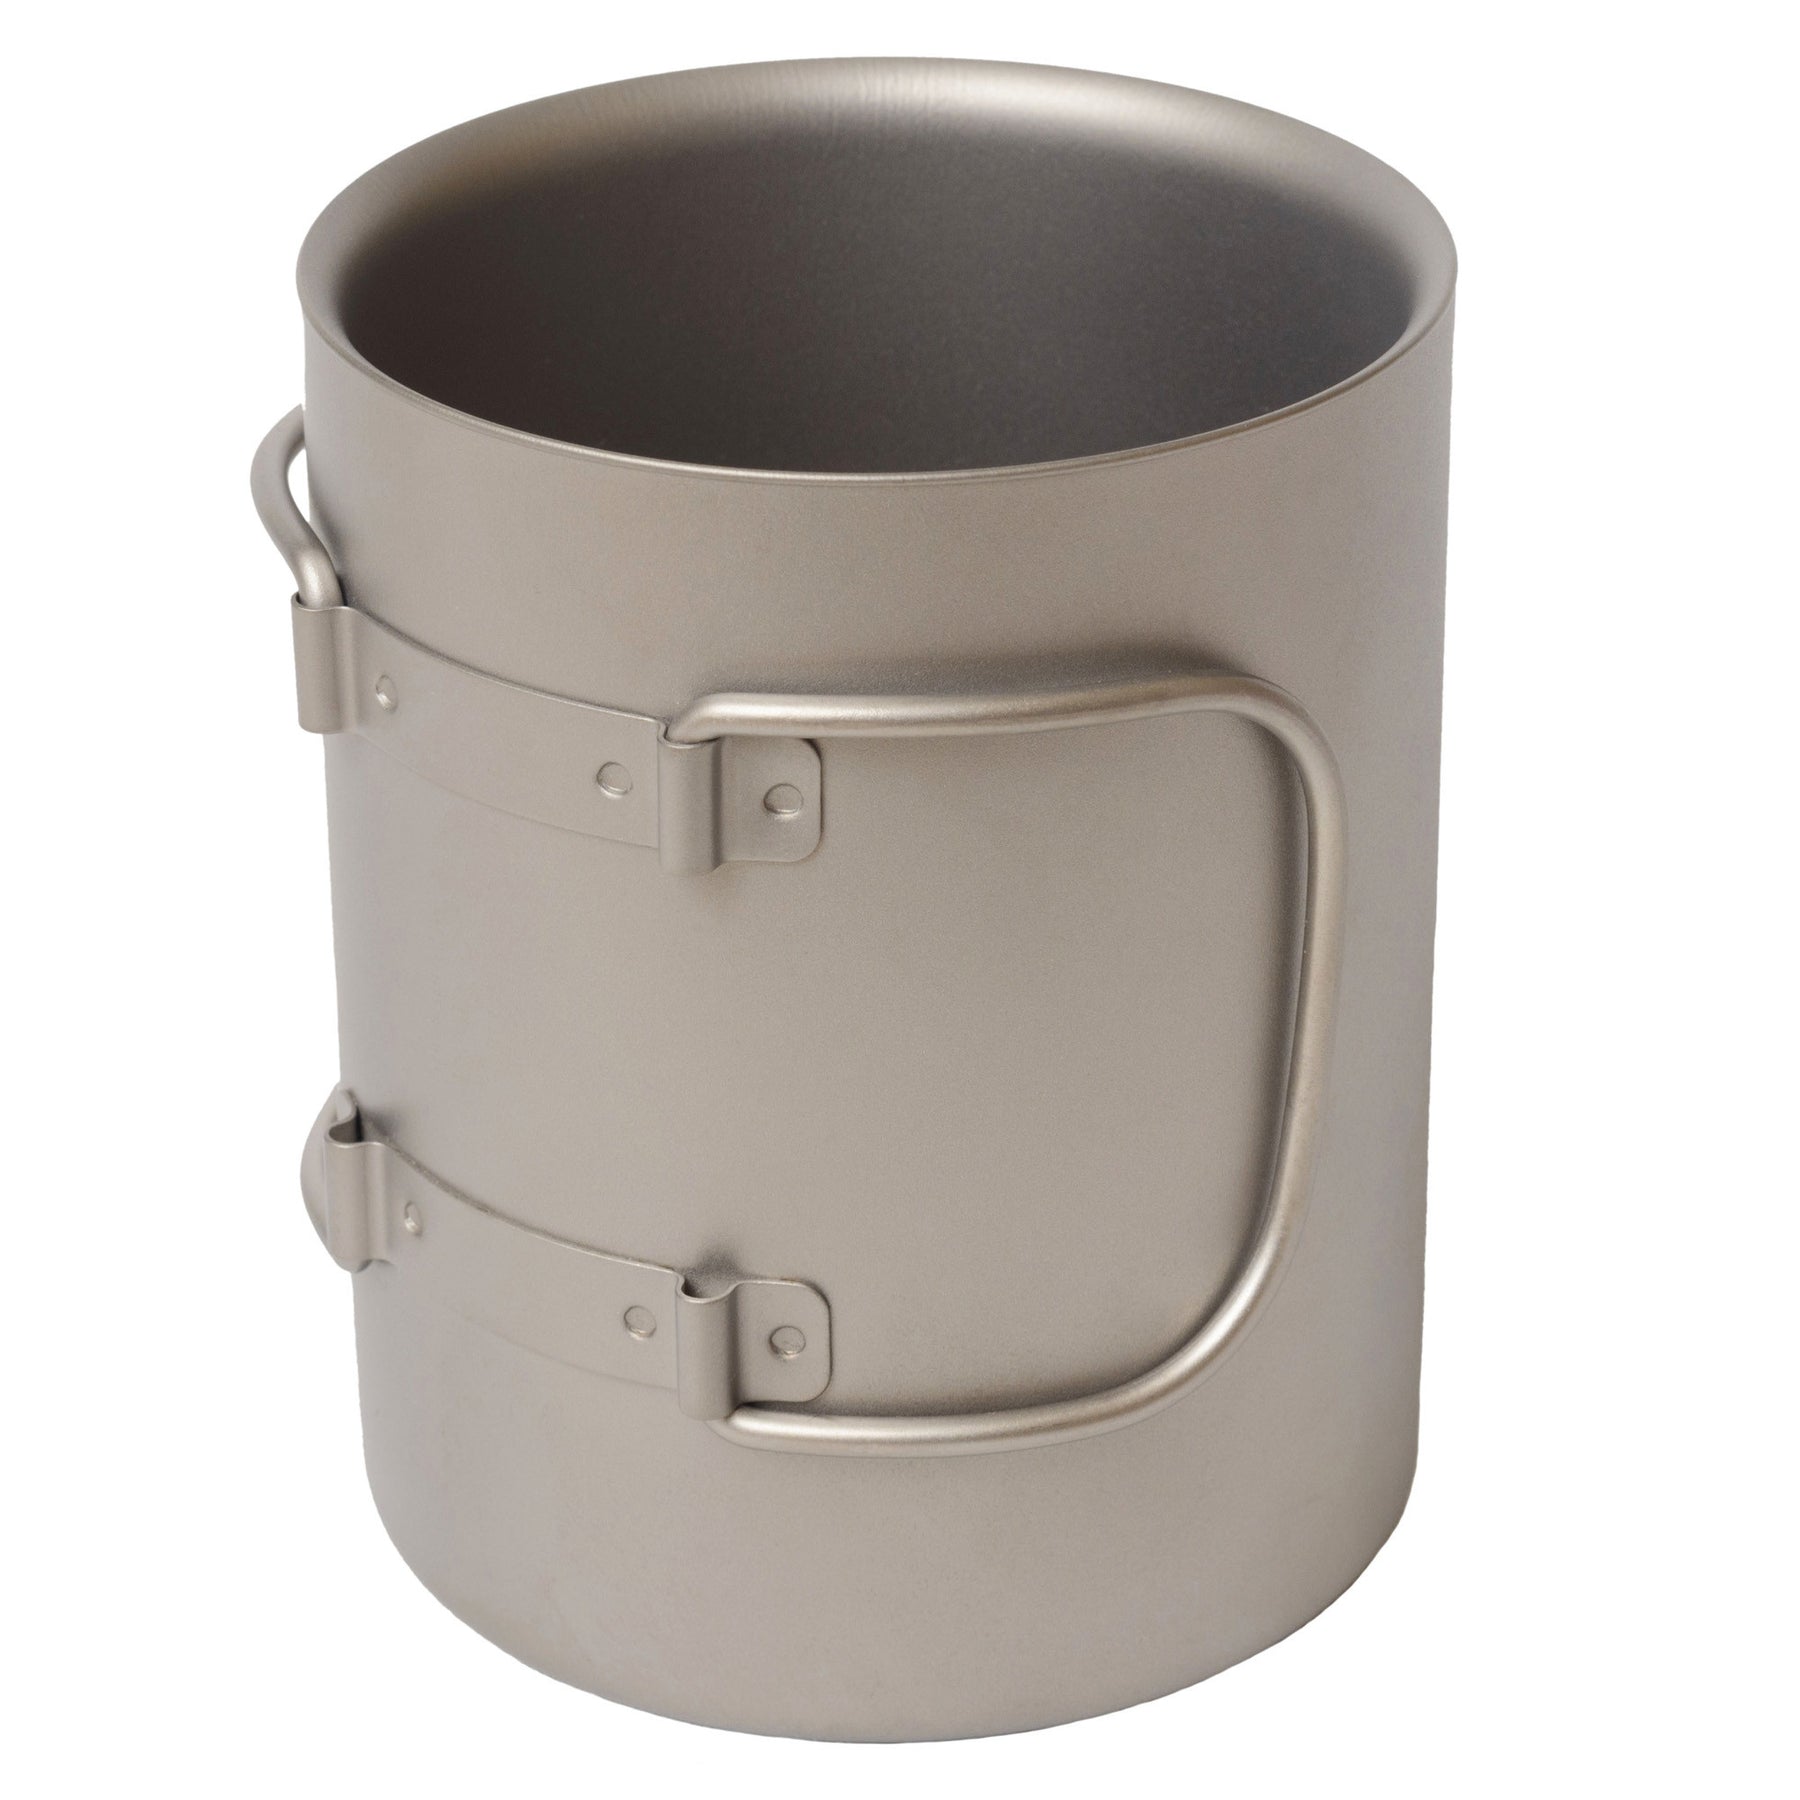 Titanium Double-Walled Mug 15oz Single